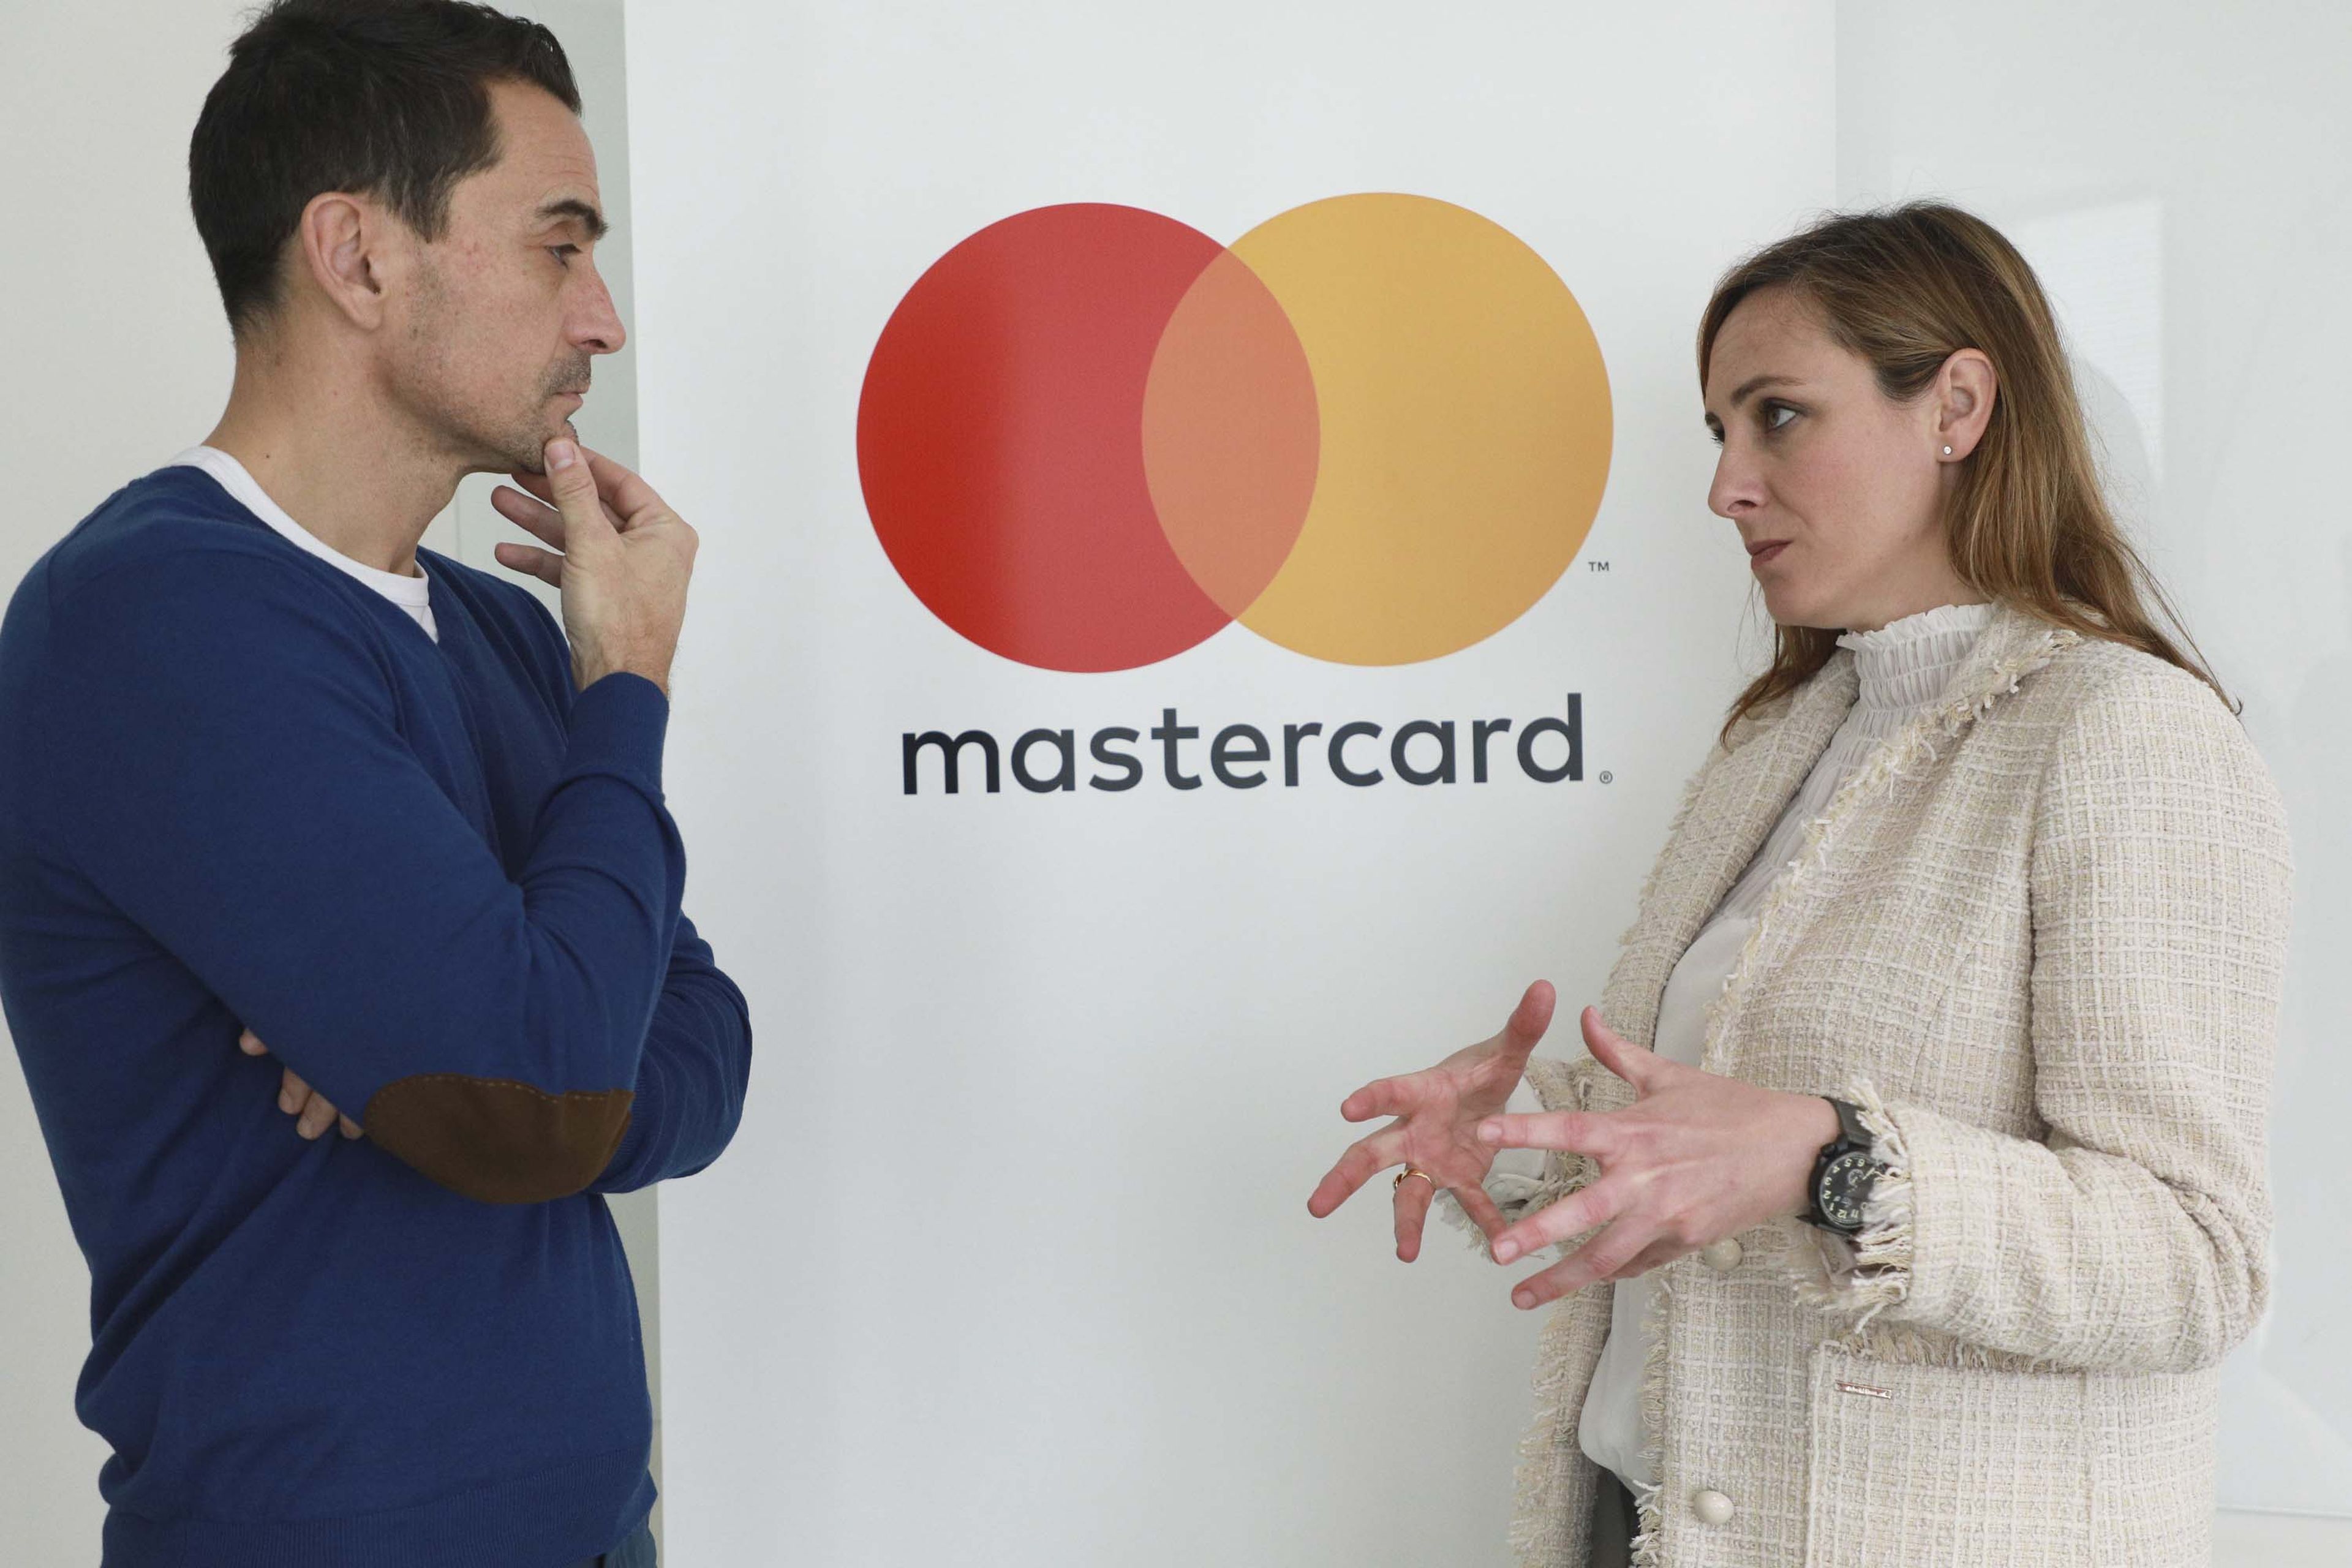 Manuel del Campo, CEO de Axel Springer España (izq) junto a Paloma Real, directora general de Mastercard España (dcha)